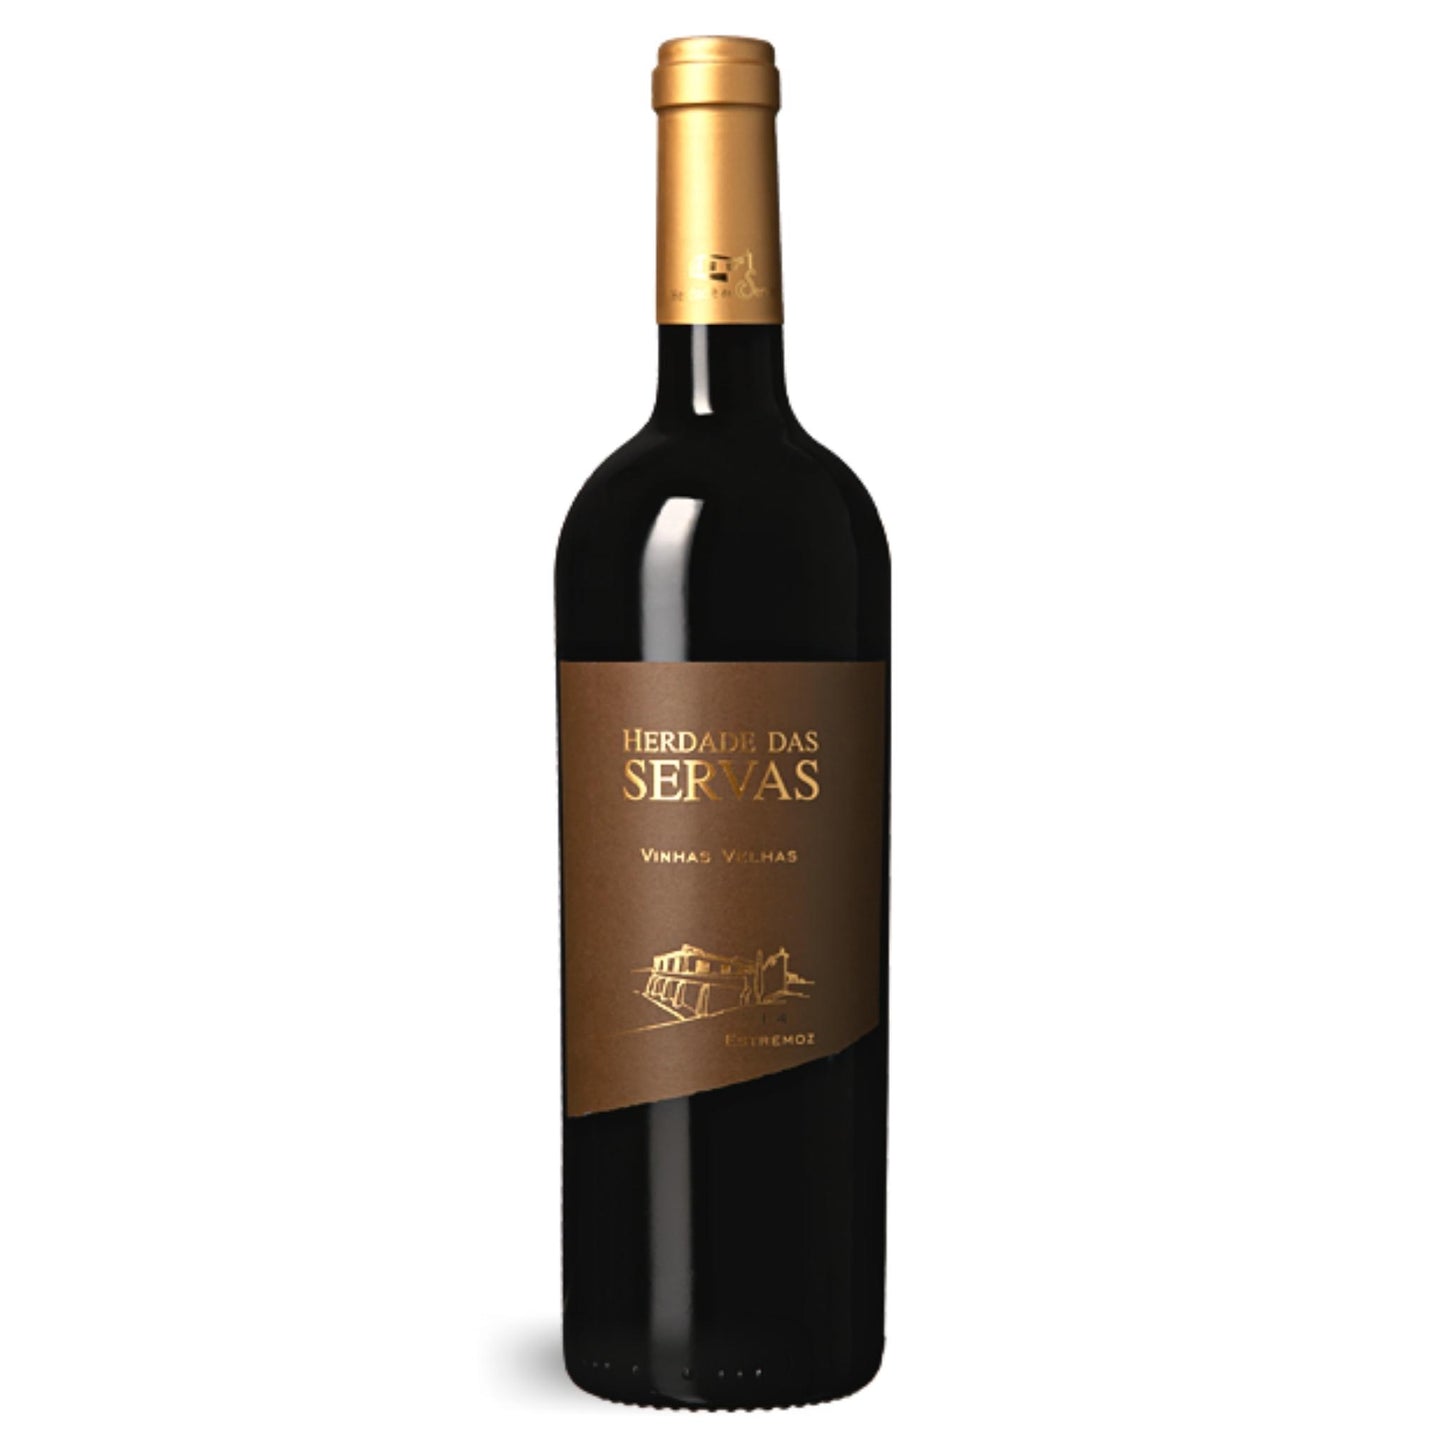 
                  
                    HERDADE DAS SERVAS VINHAS VELHAS: Rotwein vom Weingut Herdade das Servas aus der Region Estremoz – Alentejo/Portugal.
                  
                